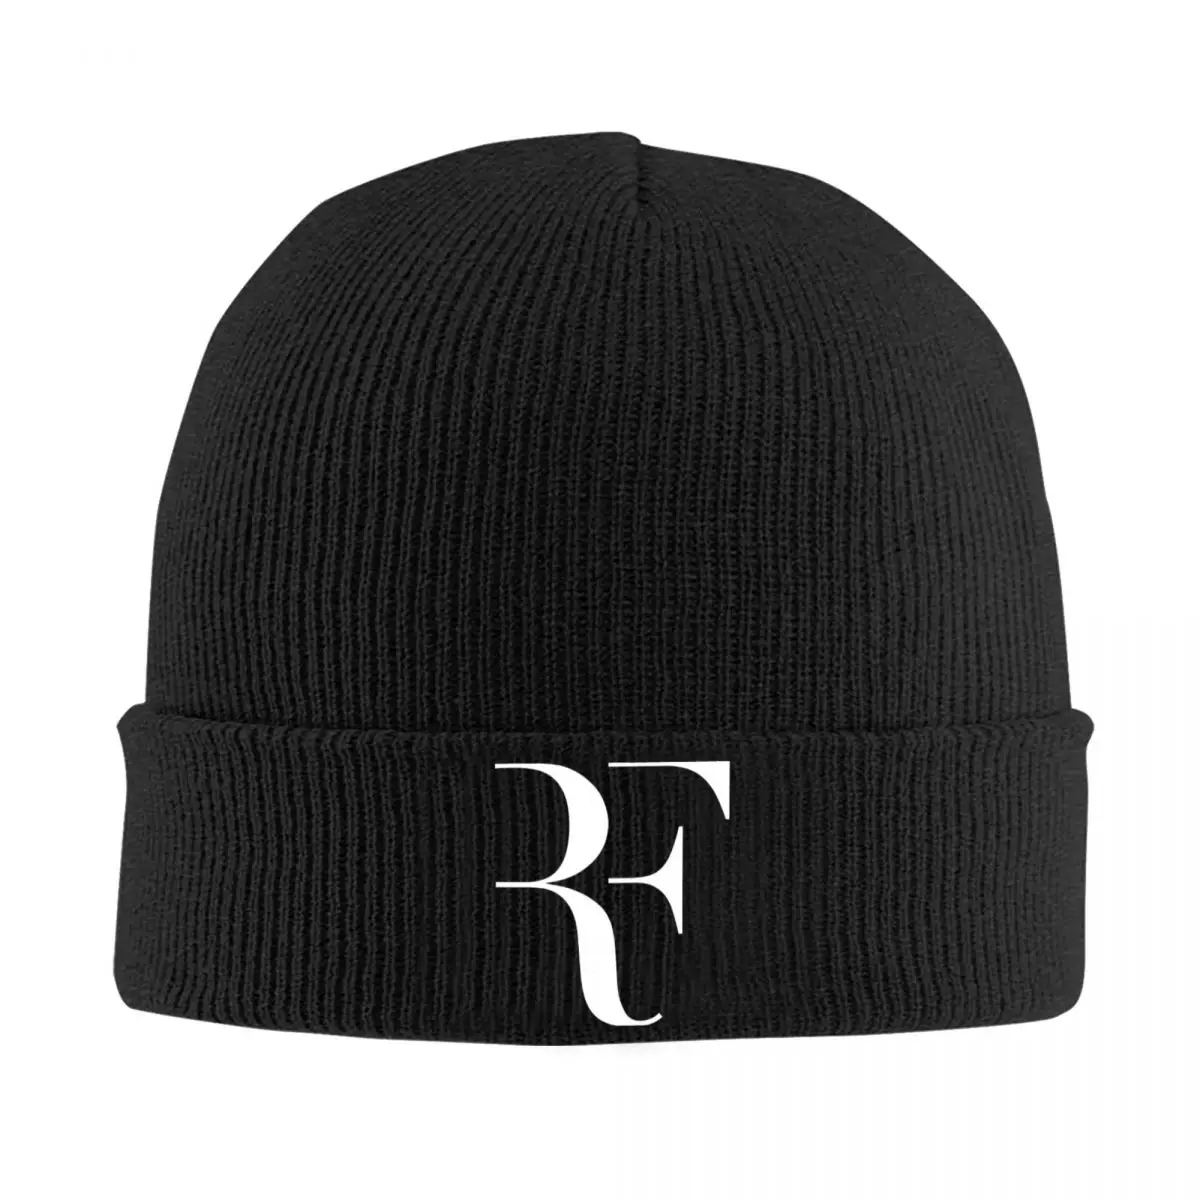 

Letter RF Knitted Hat Women Men Winter Popular Fashion Warm Skullies Beanies Hats